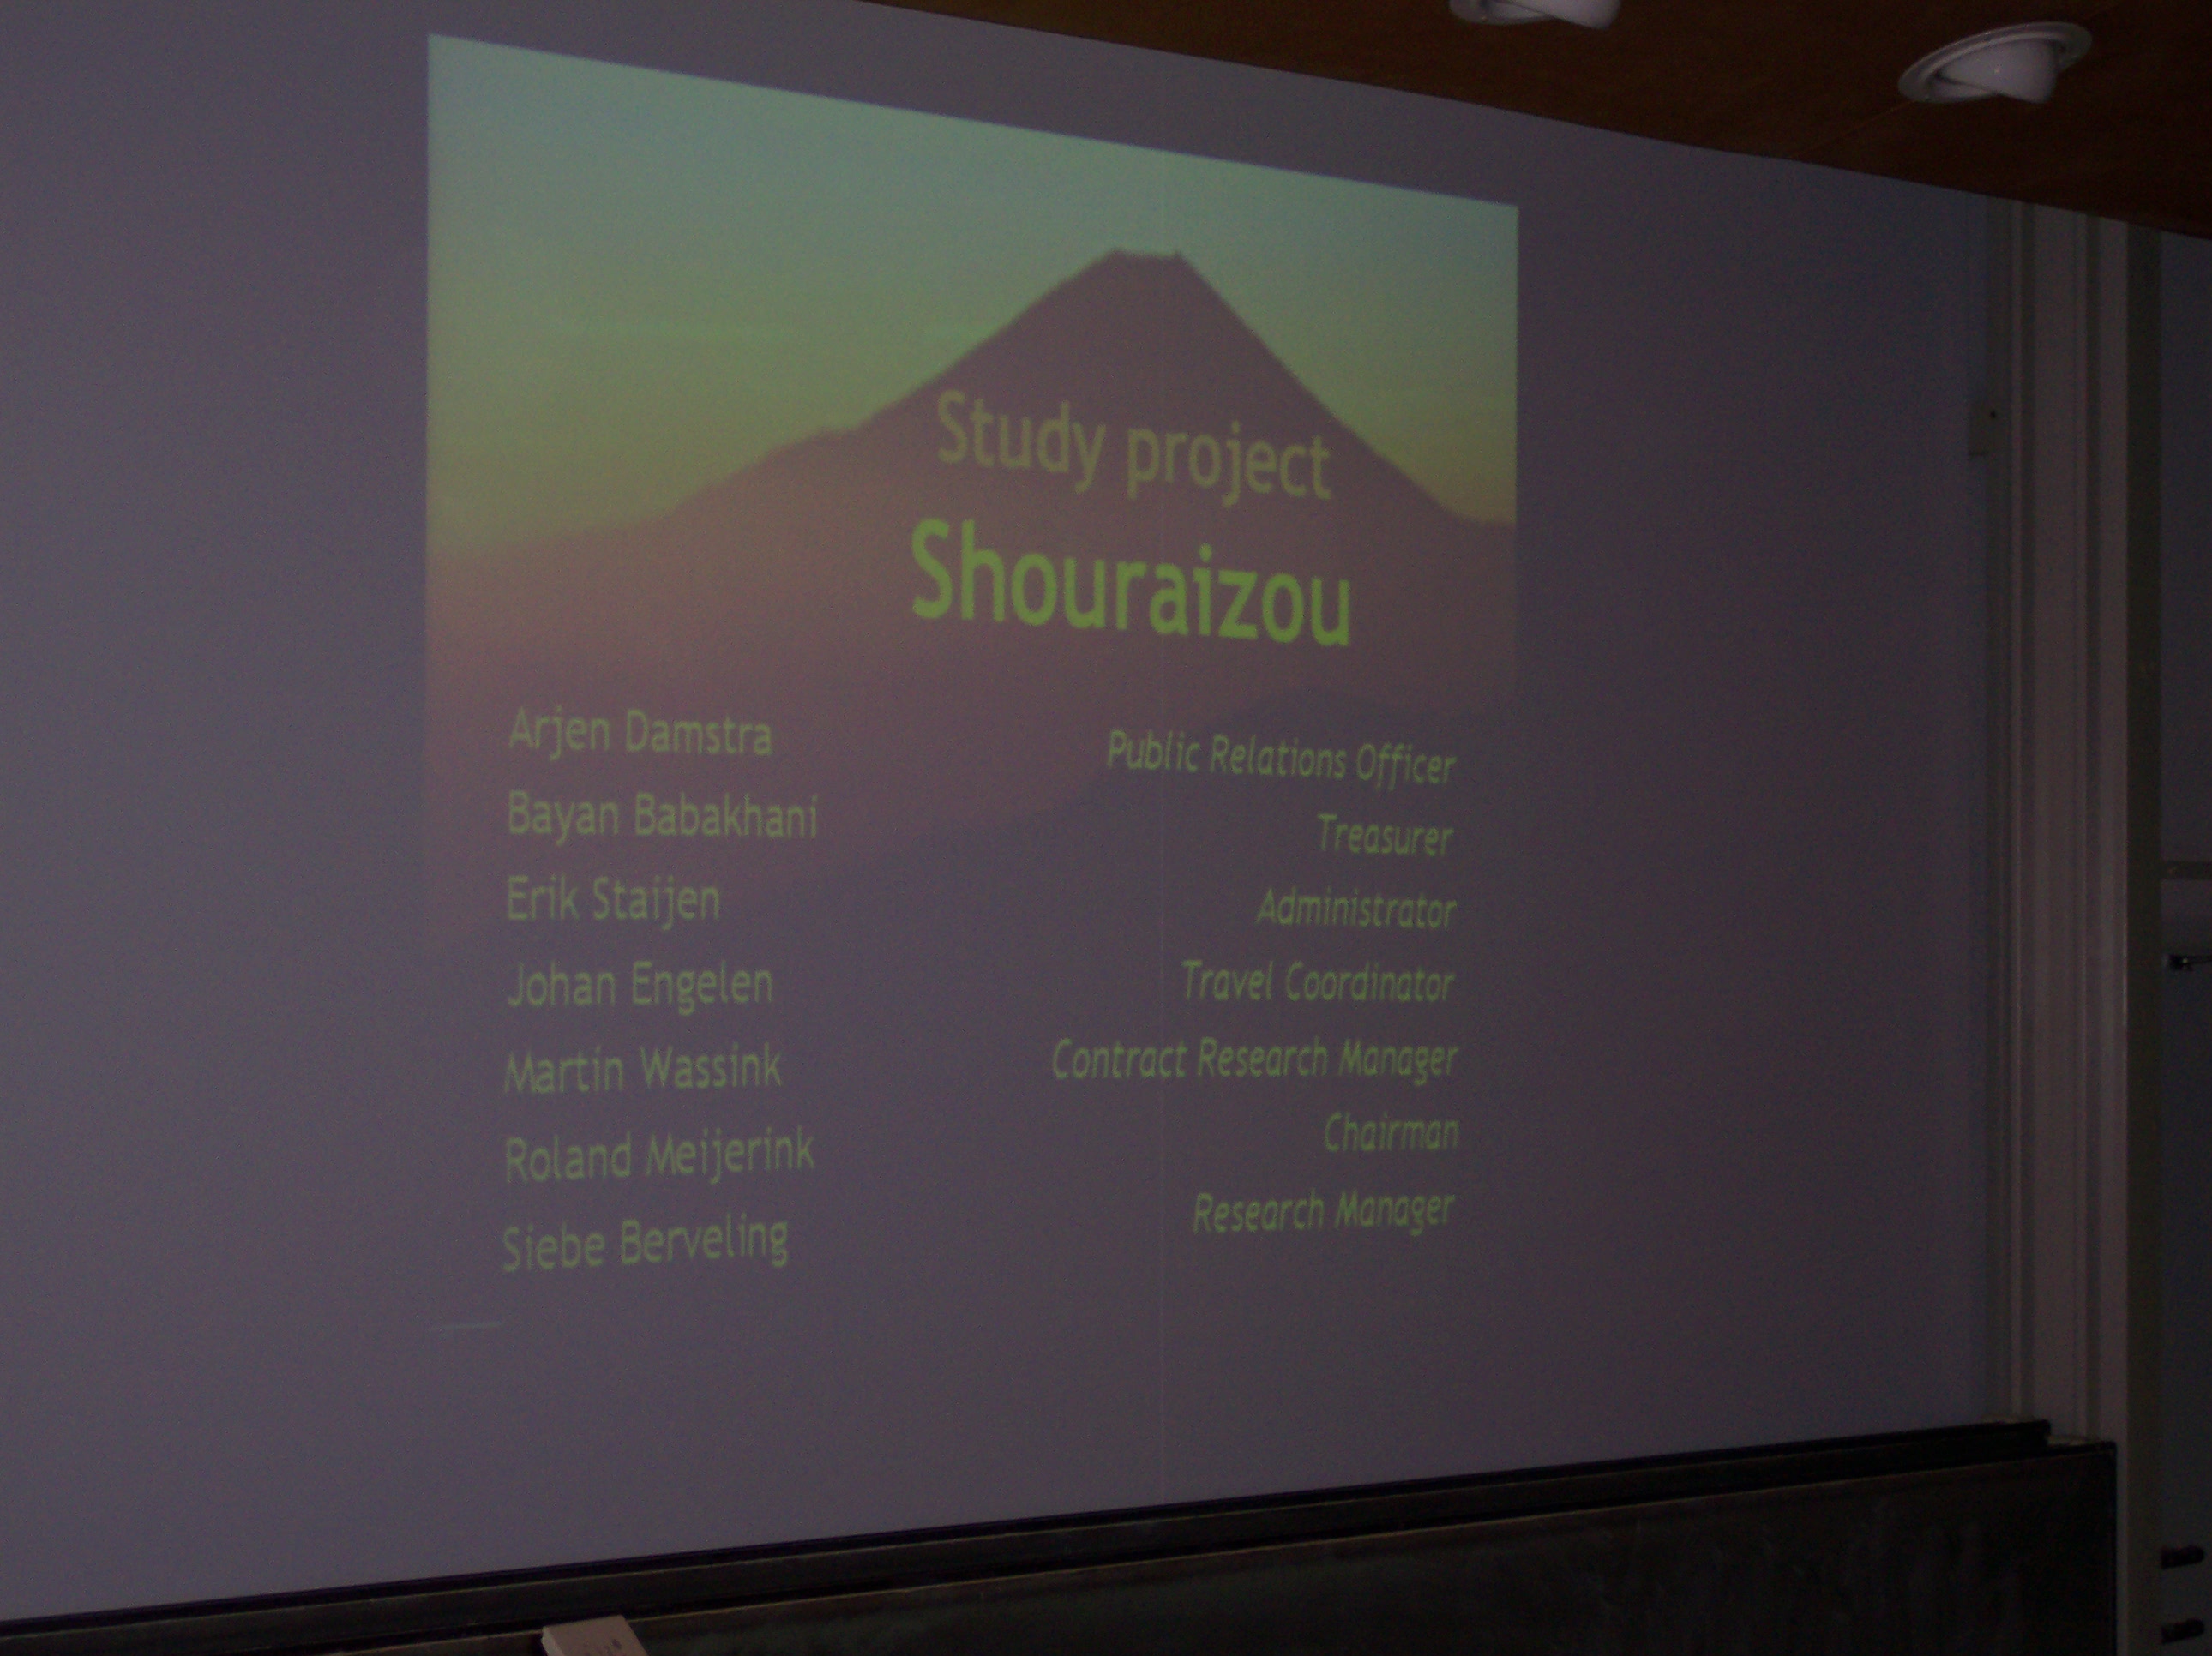 The Shouraizou committee